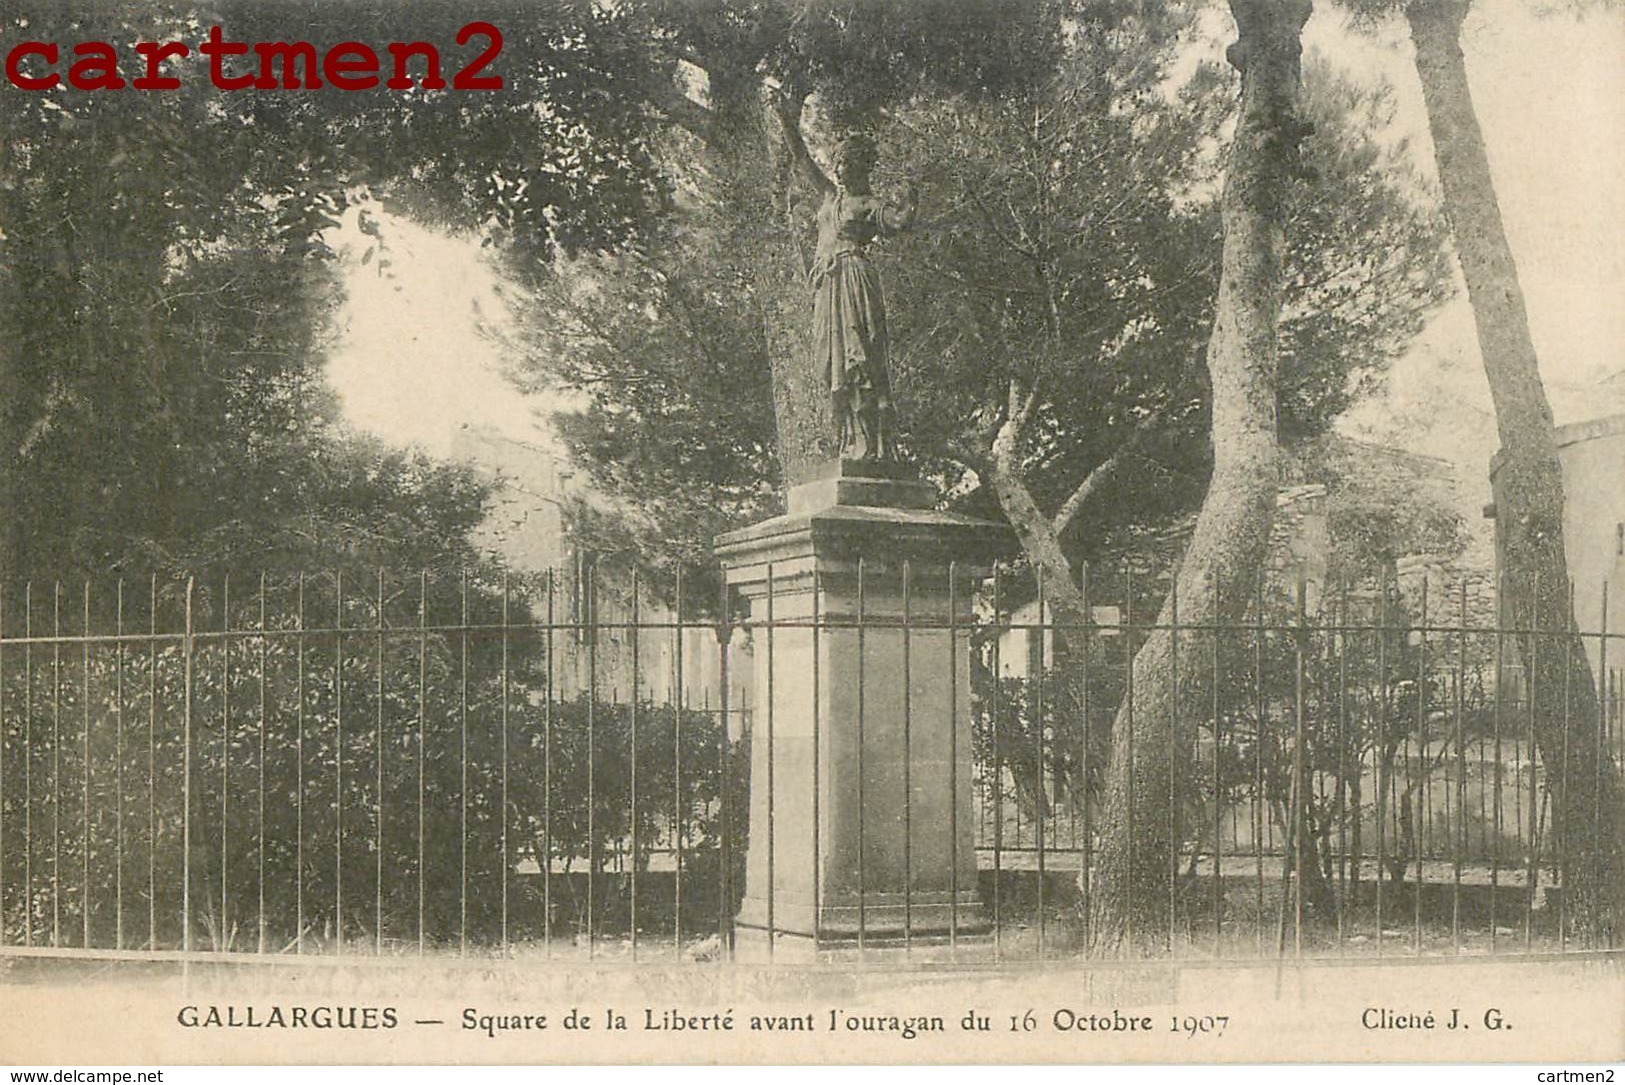 GALLARGUES SQUARE DE LA LIBERTE AVANT L'OURAGAN DU 16 OCTOBRE 1907 GARD - Gallargues-le-Montueux